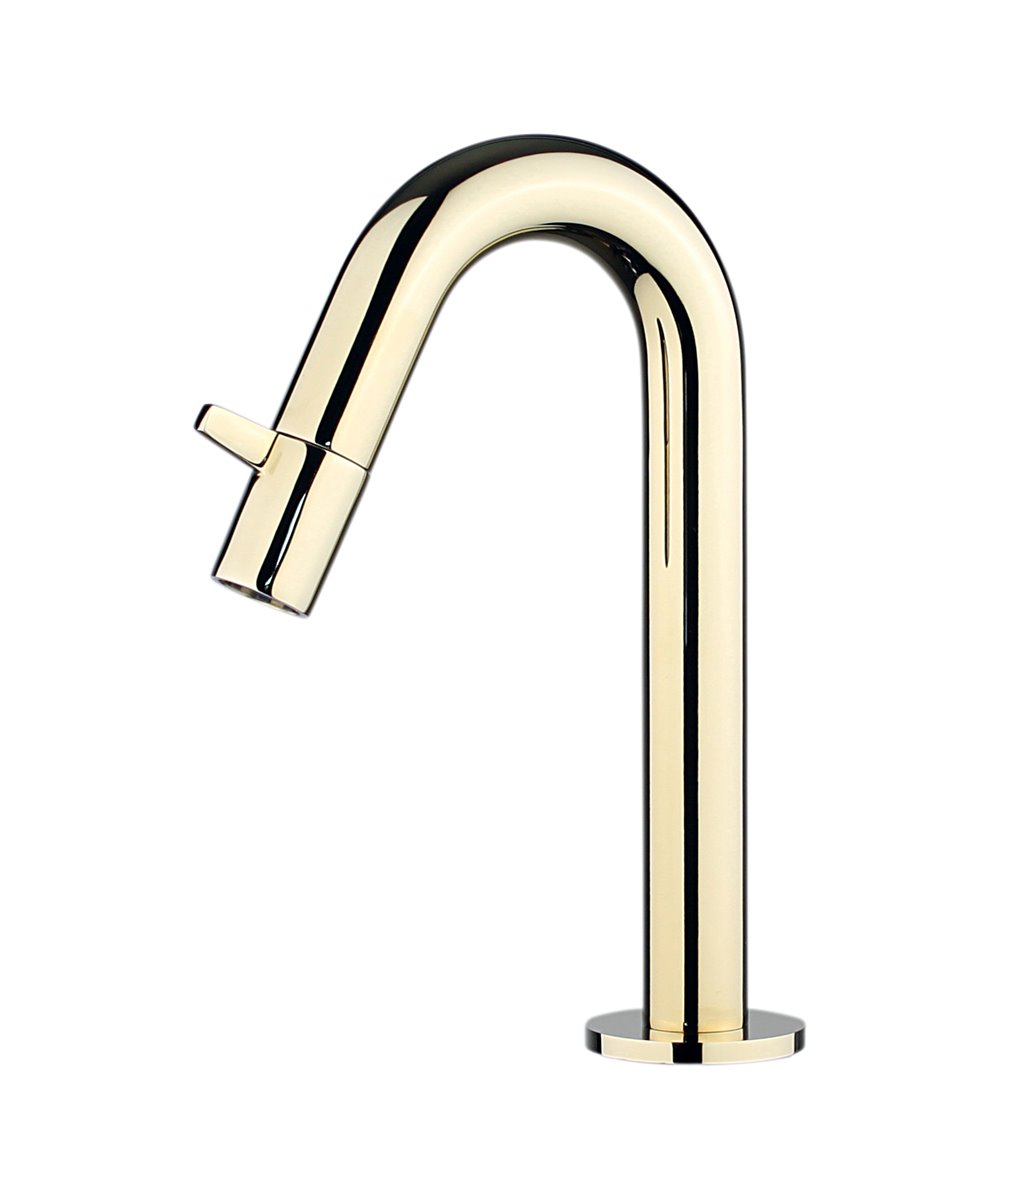 FLEX Kaltwasser Armatur Design  WC Waschtischarmatur Waschbecken gold/chrom 